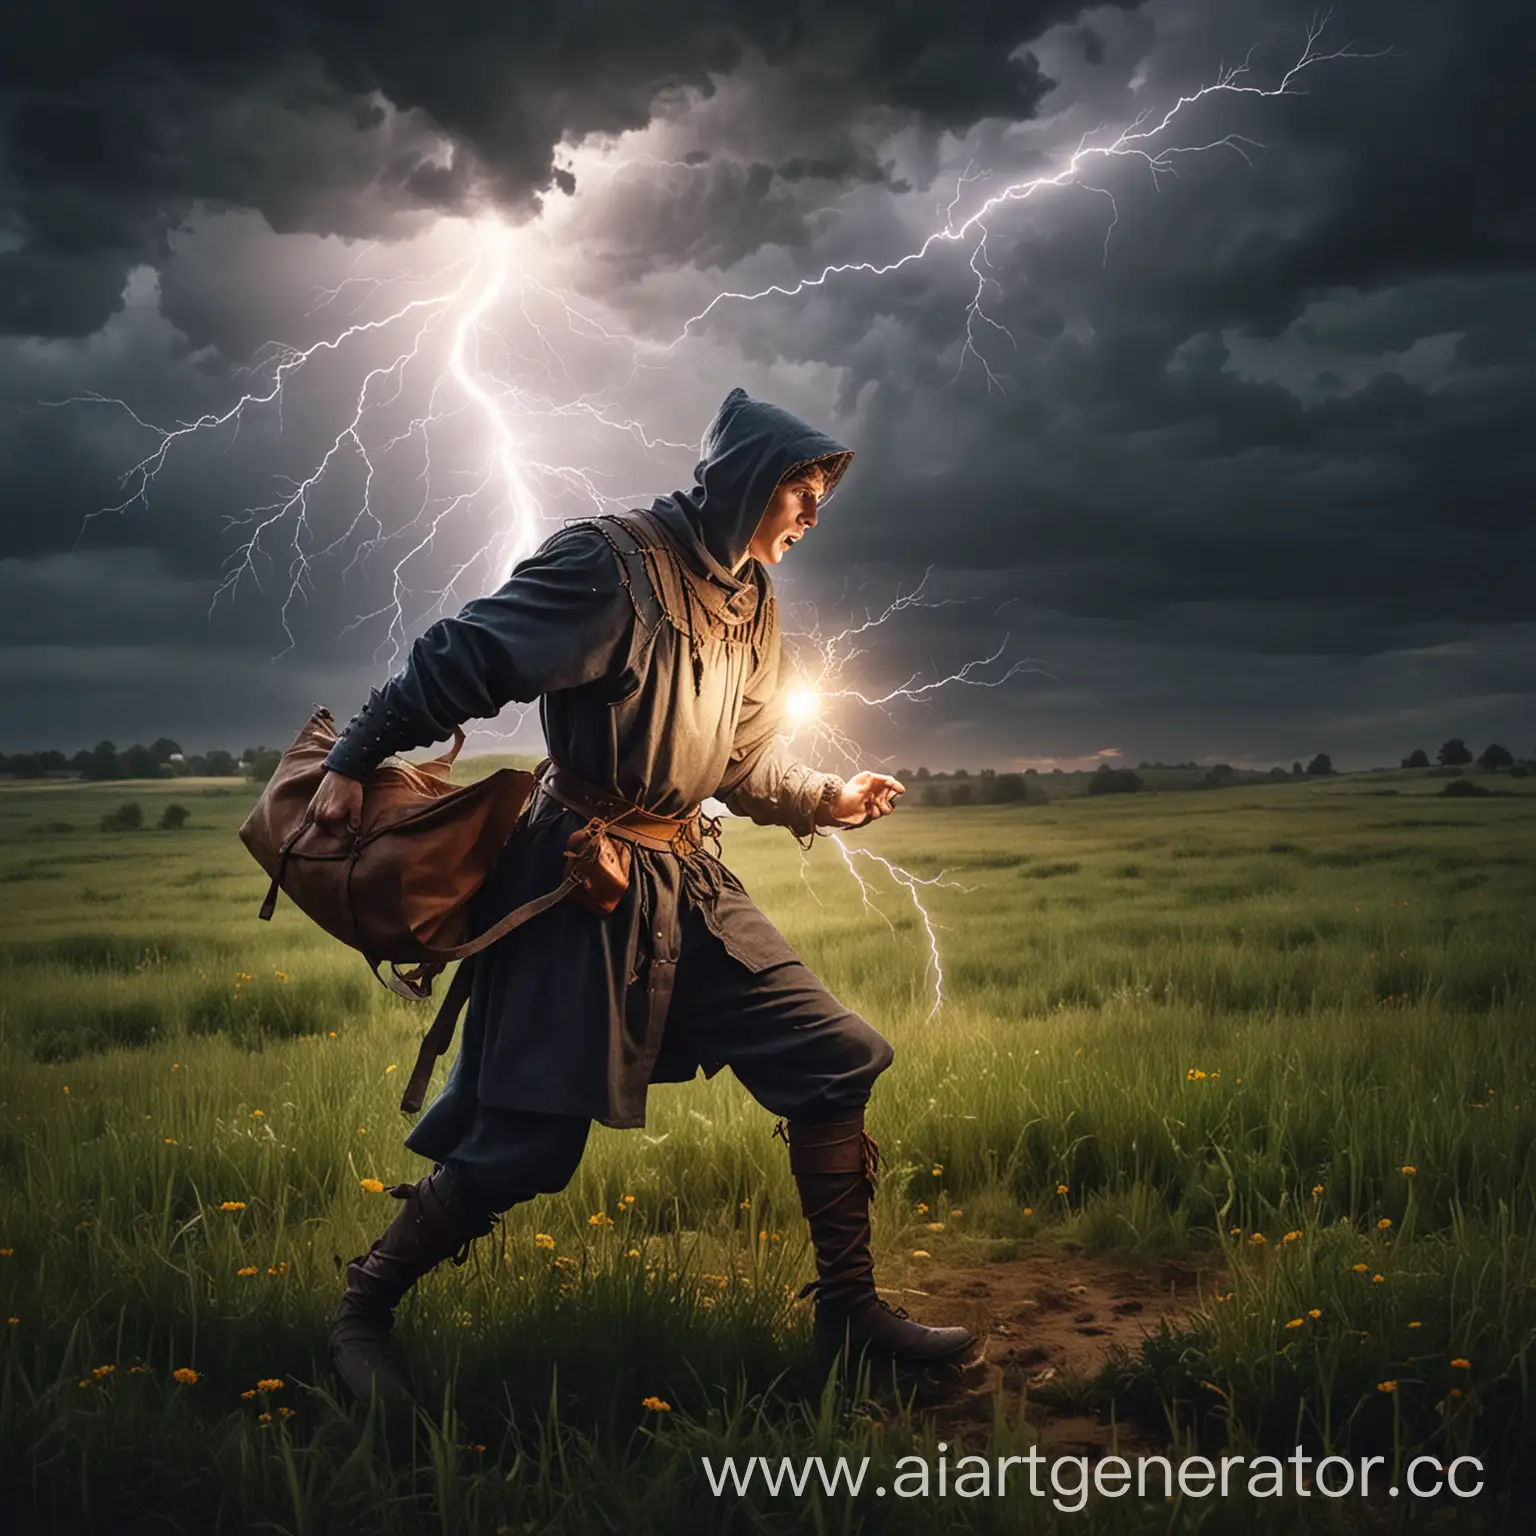 Medieval-Man-Capturing-Lightning-in-a-Field